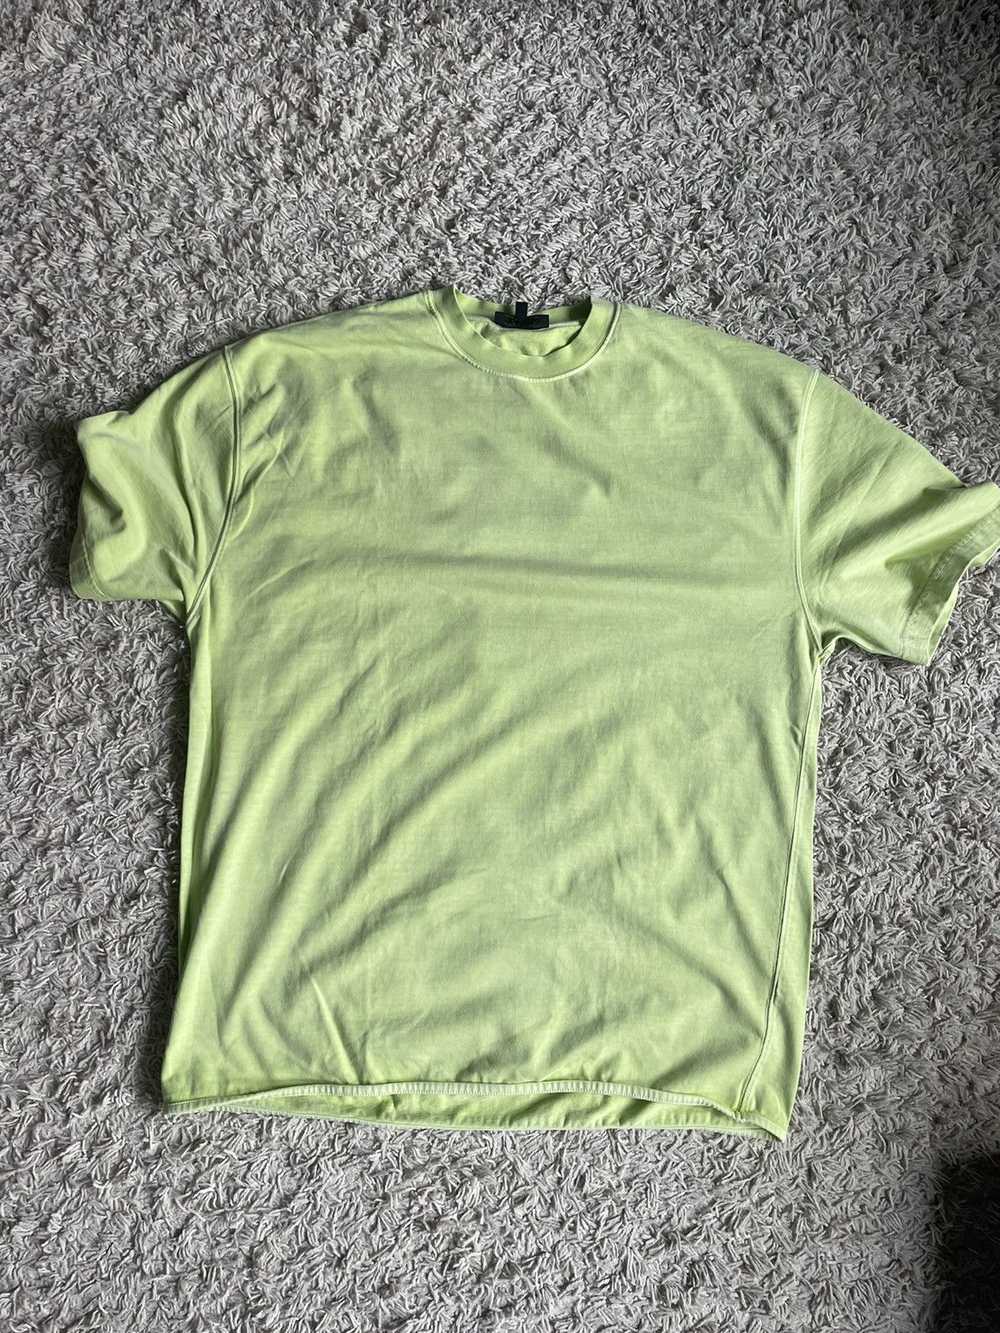 Yeezy Season Yeezy season 3 neon green tshirt - image 1